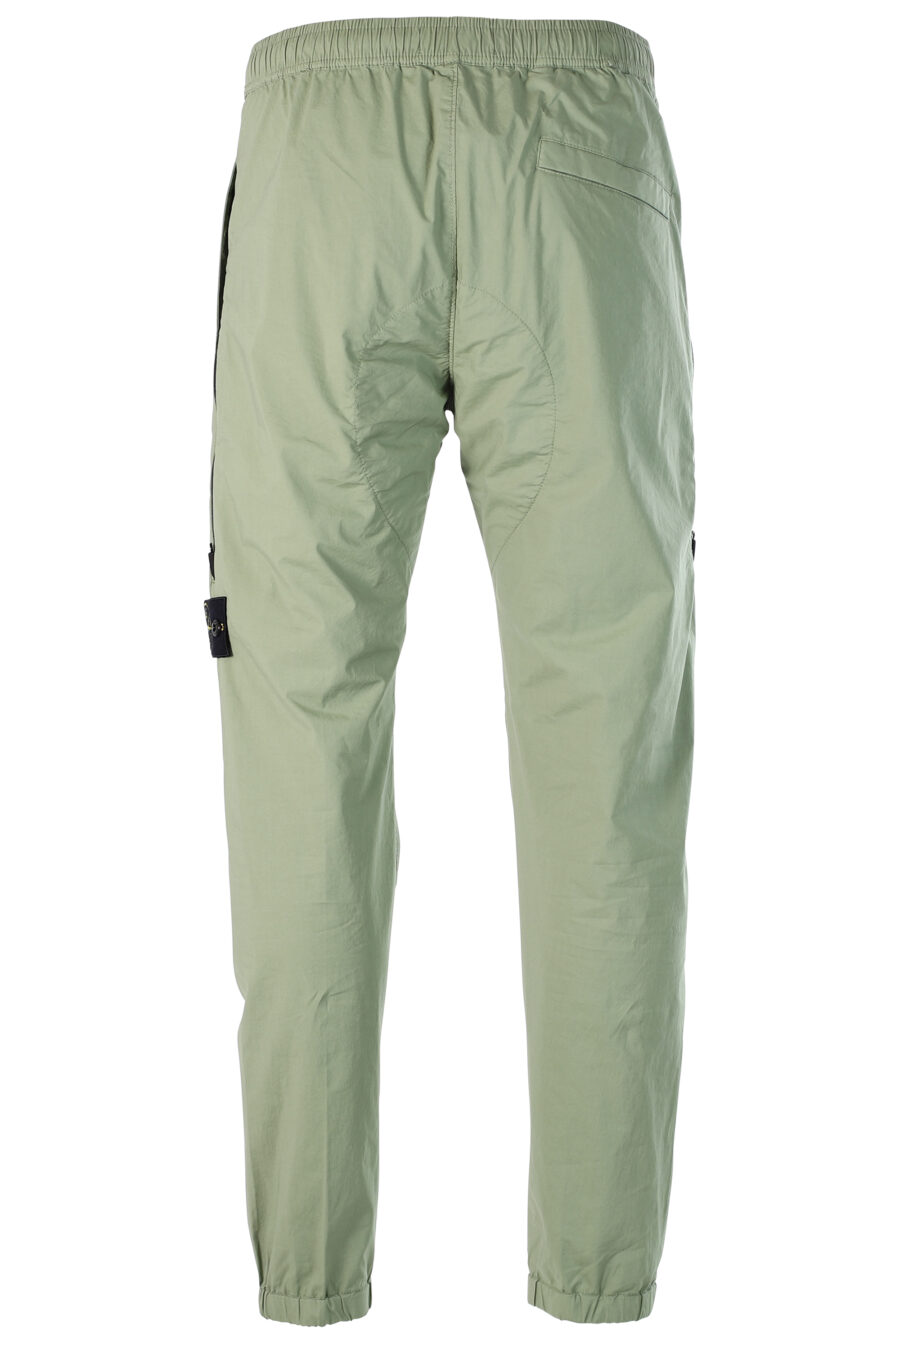 Pantalón verde militar estilo cargo y parche - 8052572549175 3